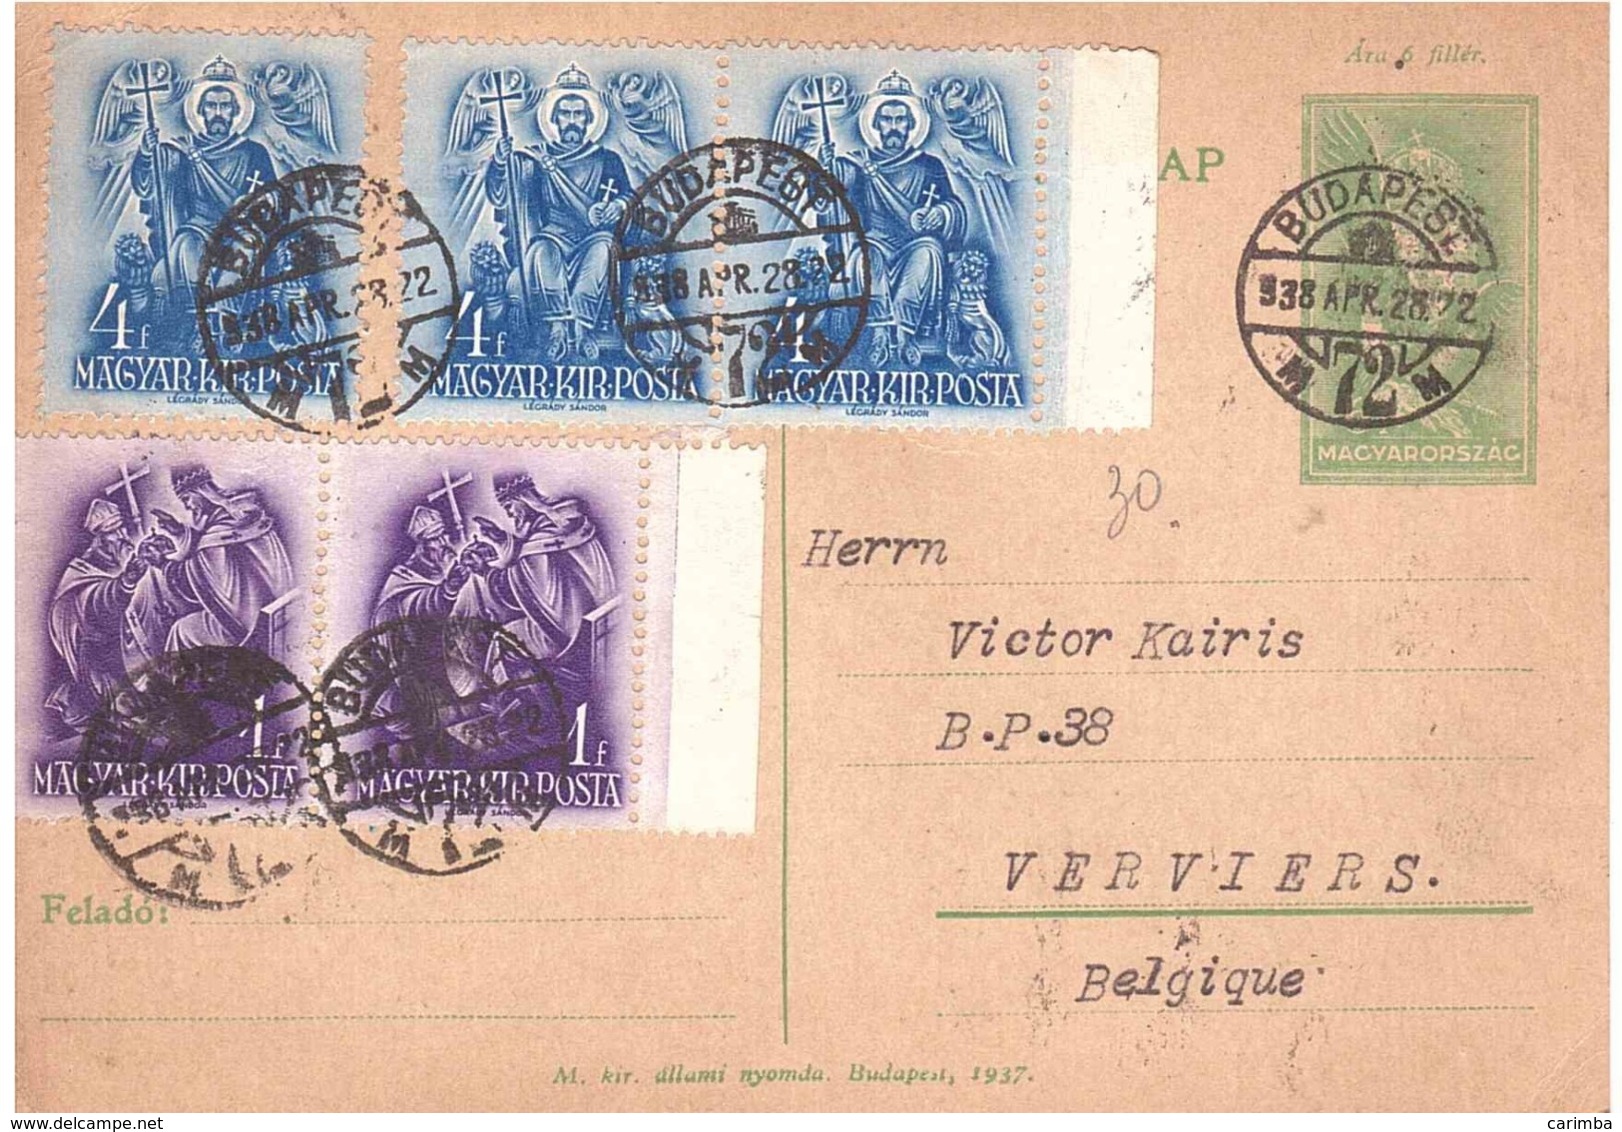 BUDAPEST 72 - Postal Stationery